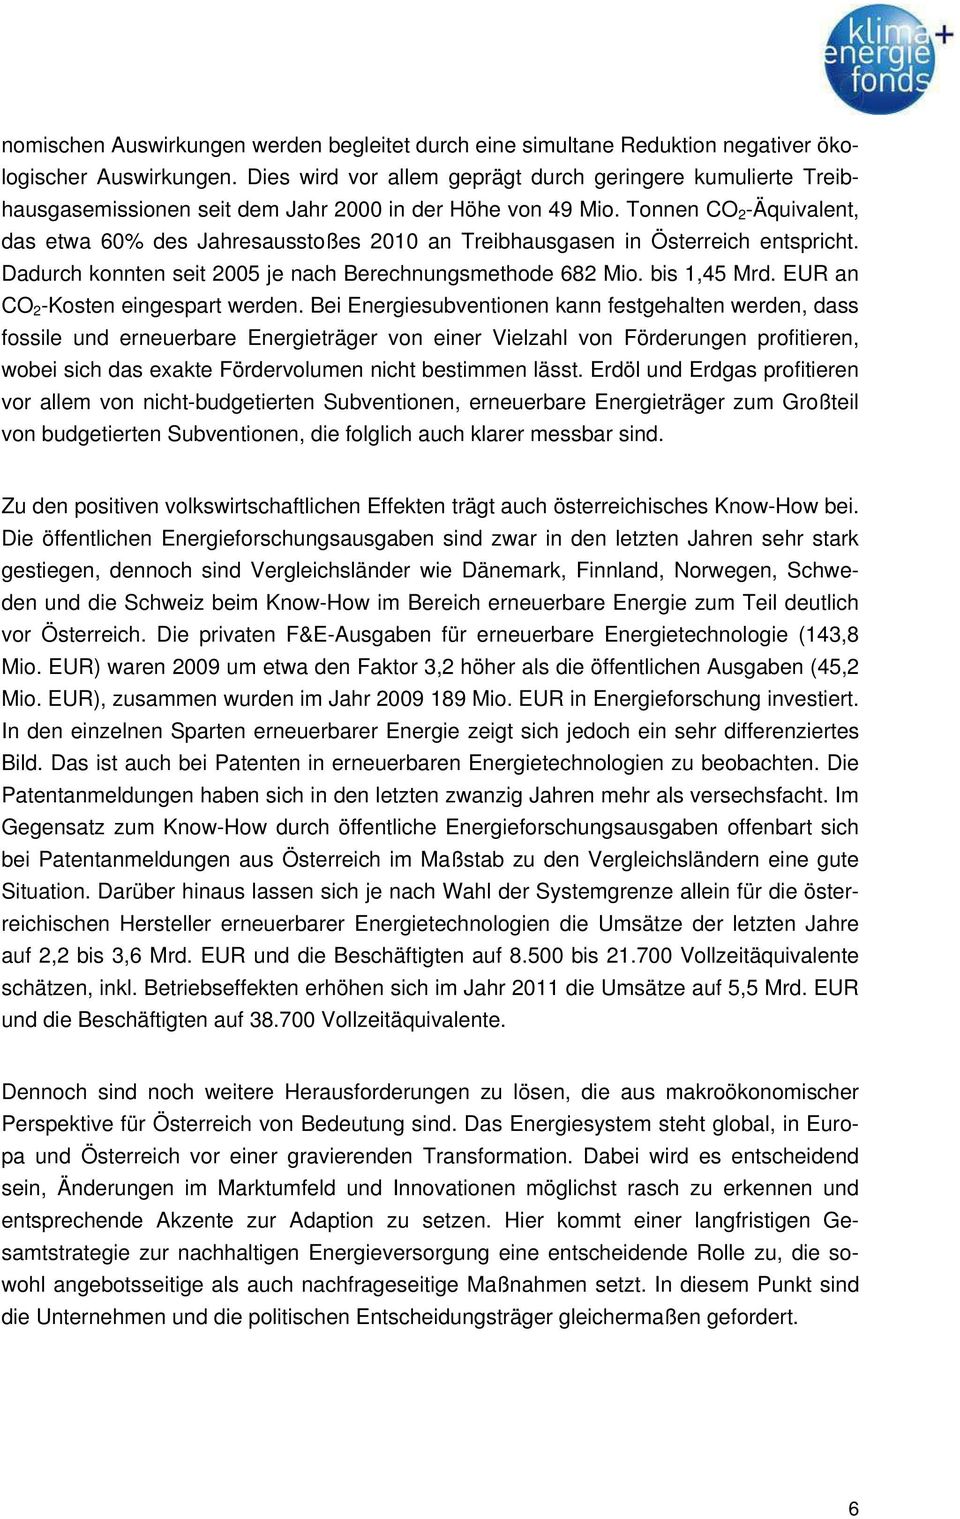 Tonnen CO 2 -Äquivalent, das etwa 60% des Jahresausstoßes 2010 an Treibhausgasen in Österreich entspricht. Dadurch konnten seit 2005 je nach Berechnungsmethode 682 Mio. bis 1,45 Mrd.